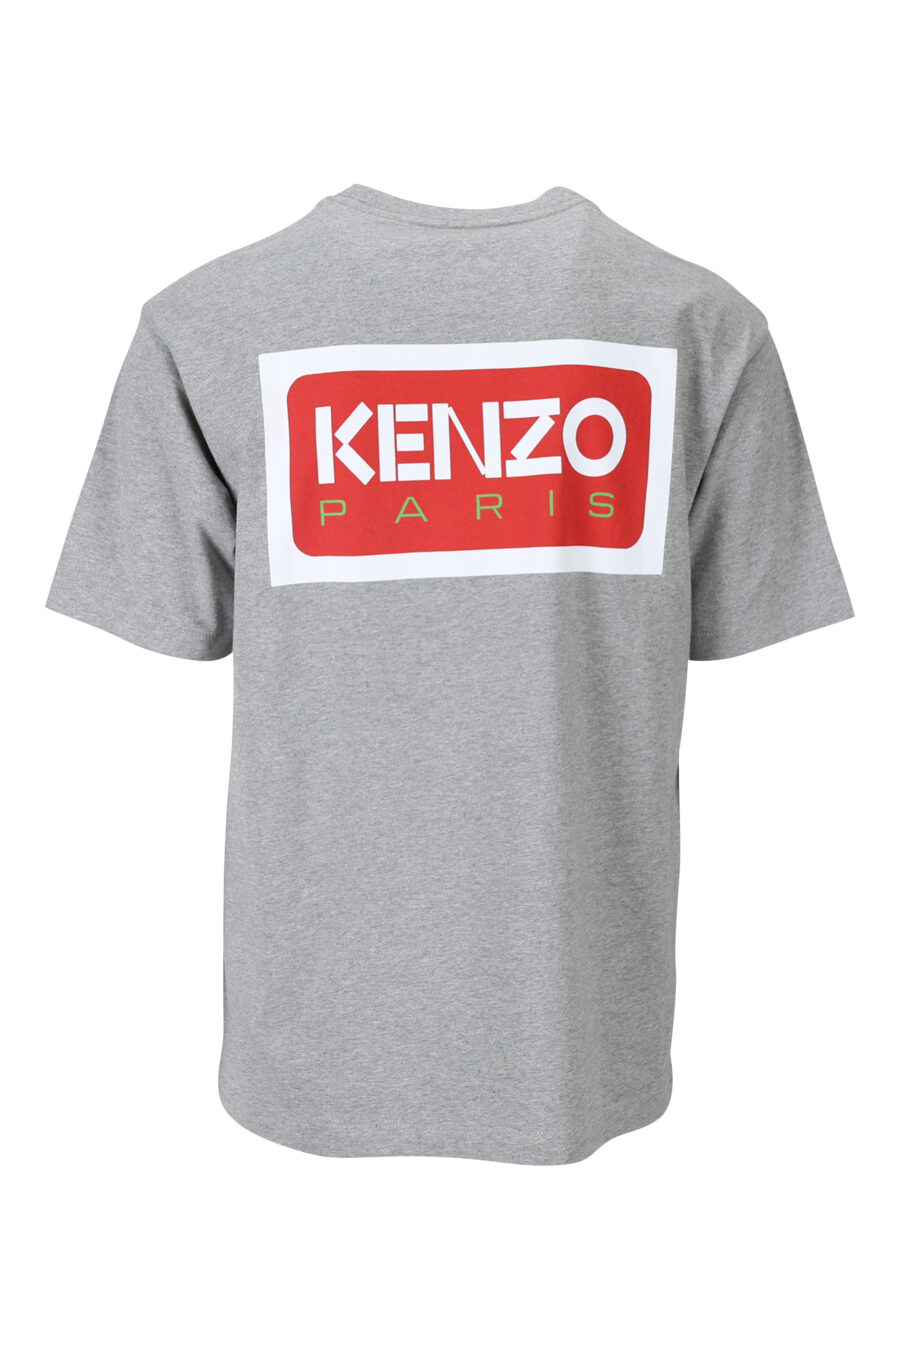 T-shirt cinzenta com minilogo "kenzo paris" - 3612230543188 1